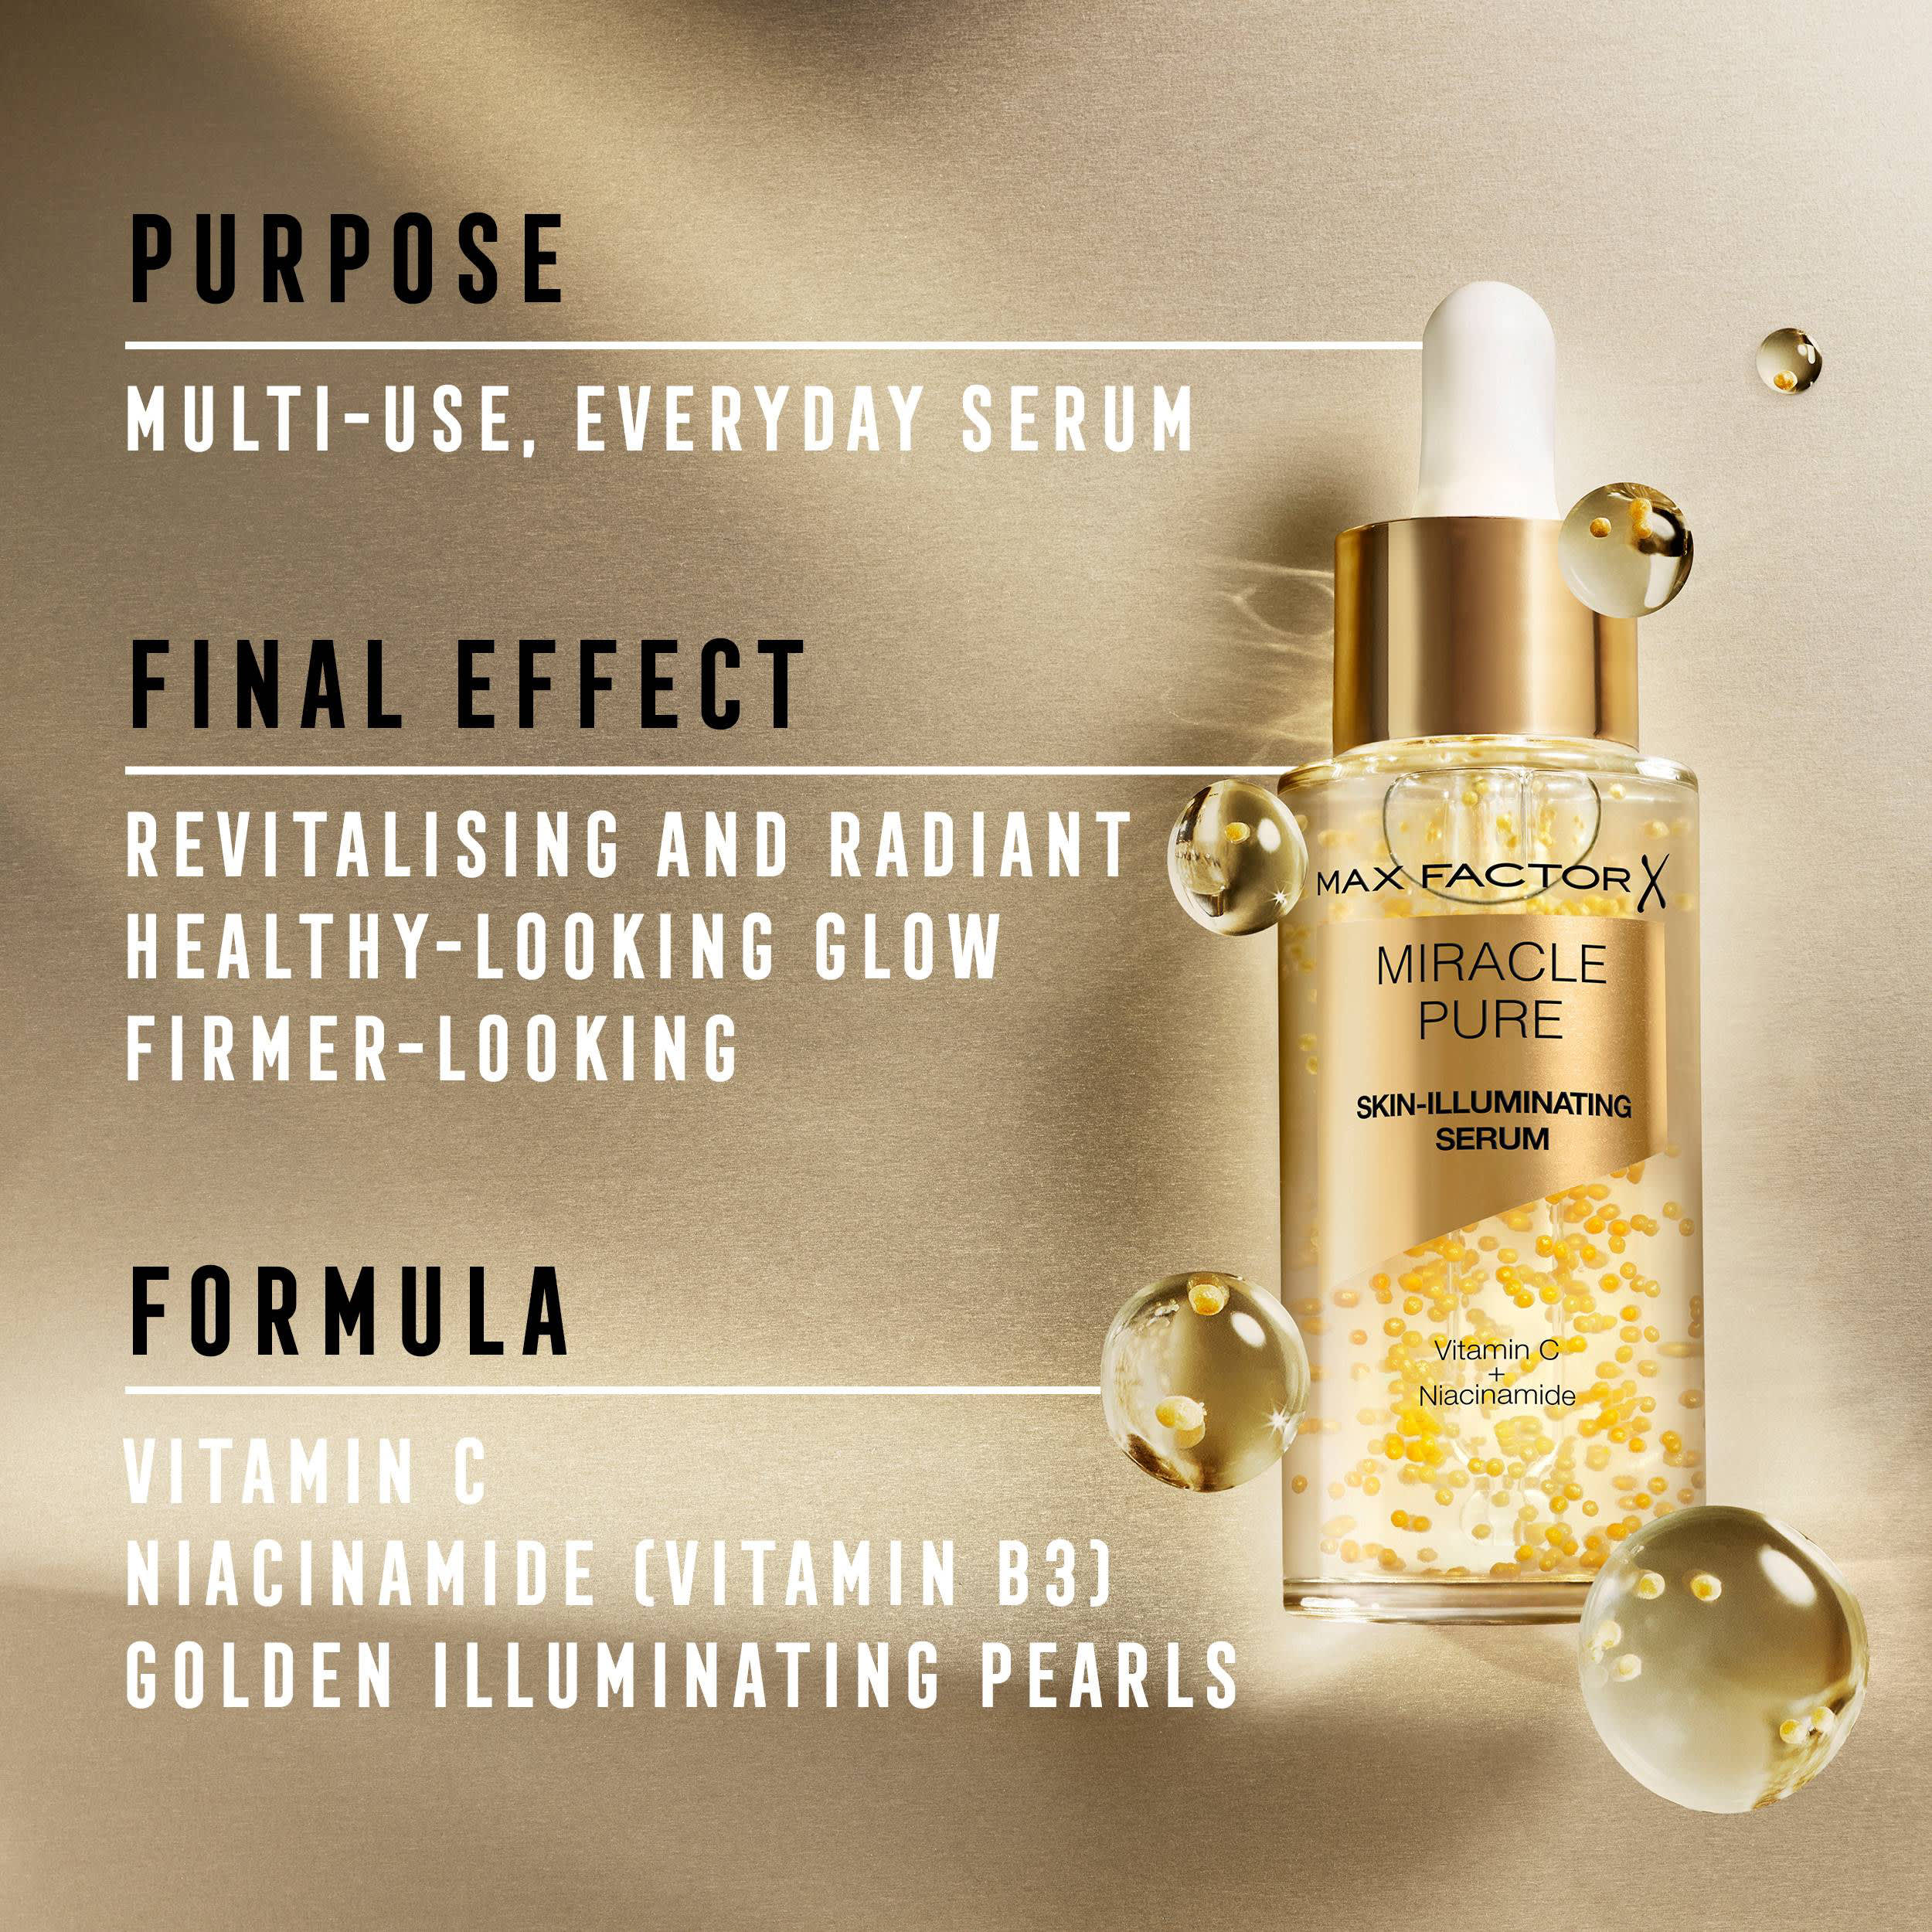 Miracle Pure Skin-Illuminating Serum